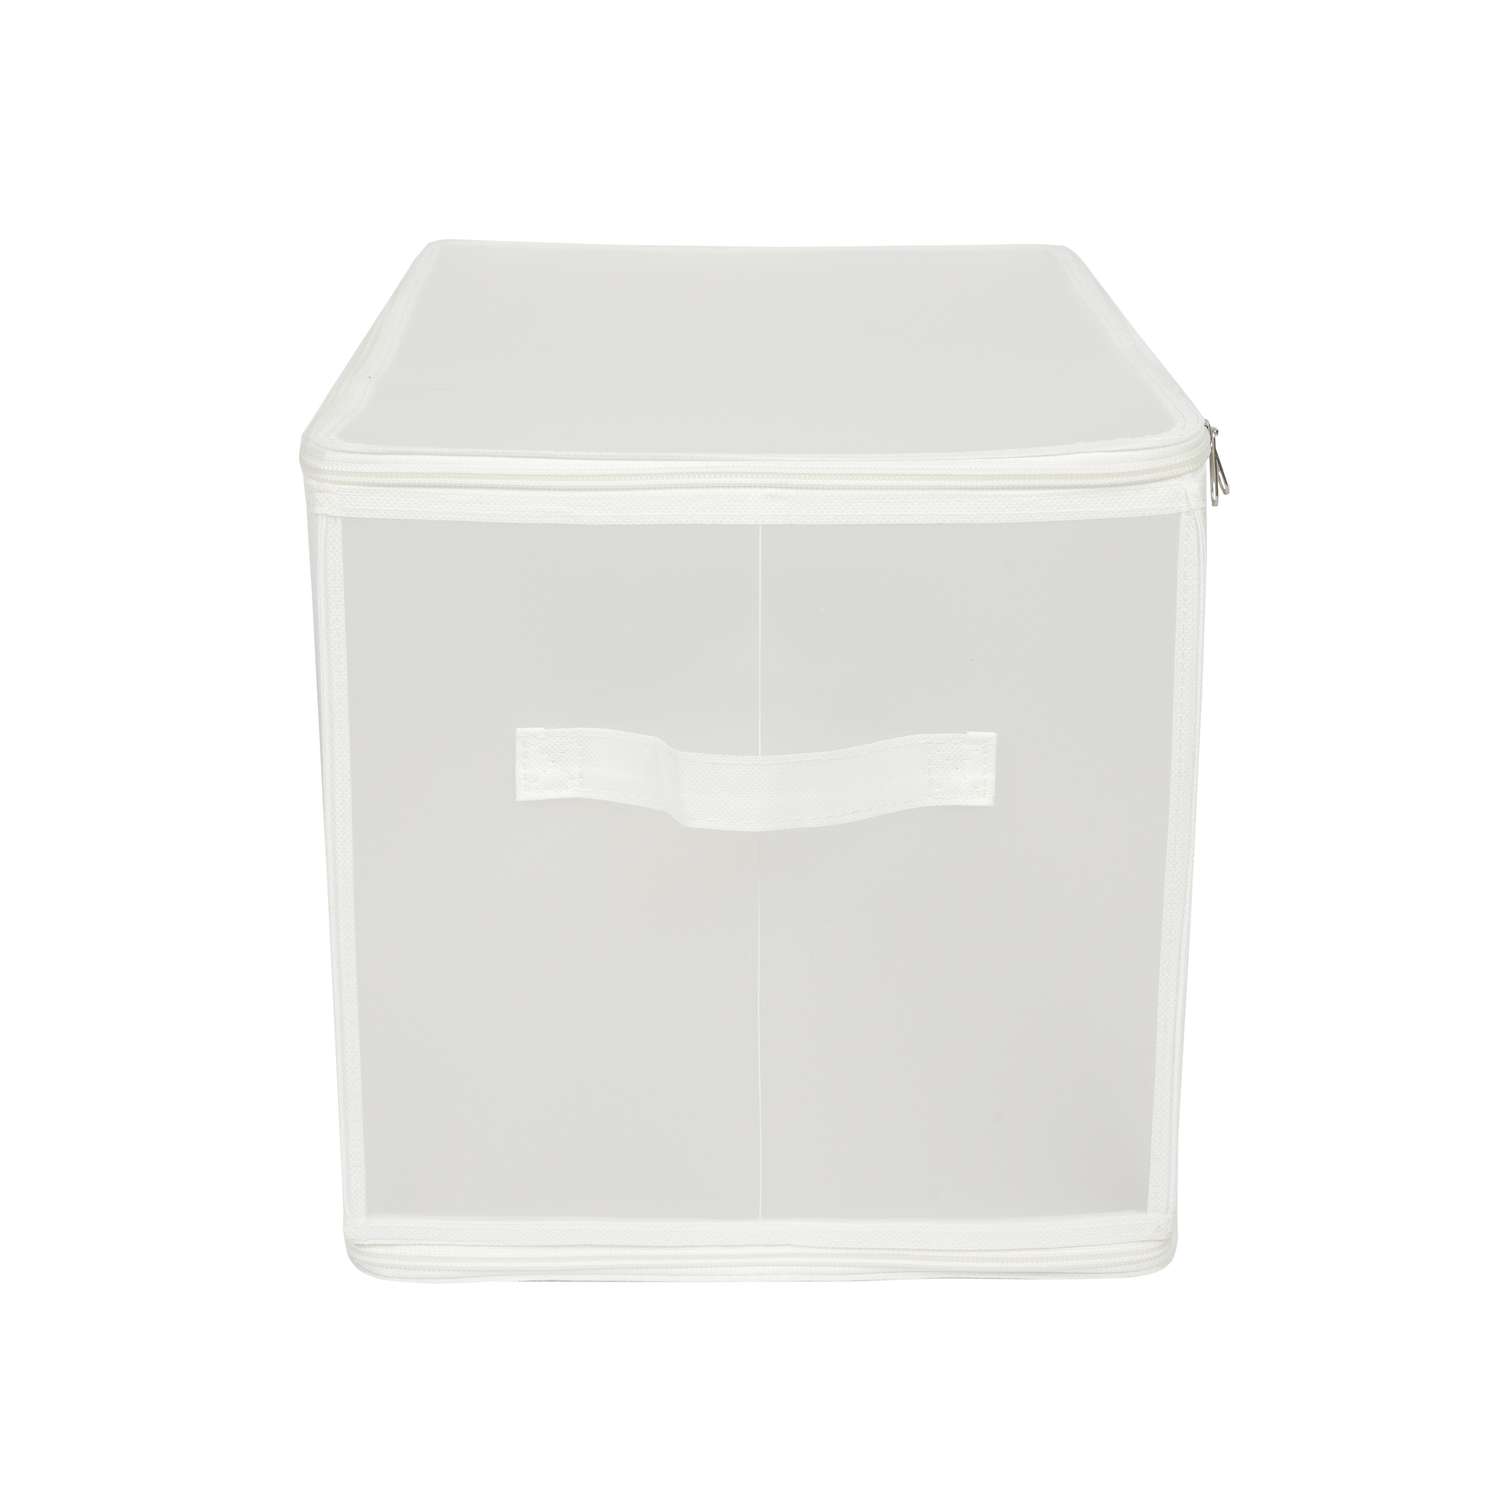 Короб для хранения ЕВРОГАРАНТ серии Zip-box полипропилен 52х30х30 см - фото 7